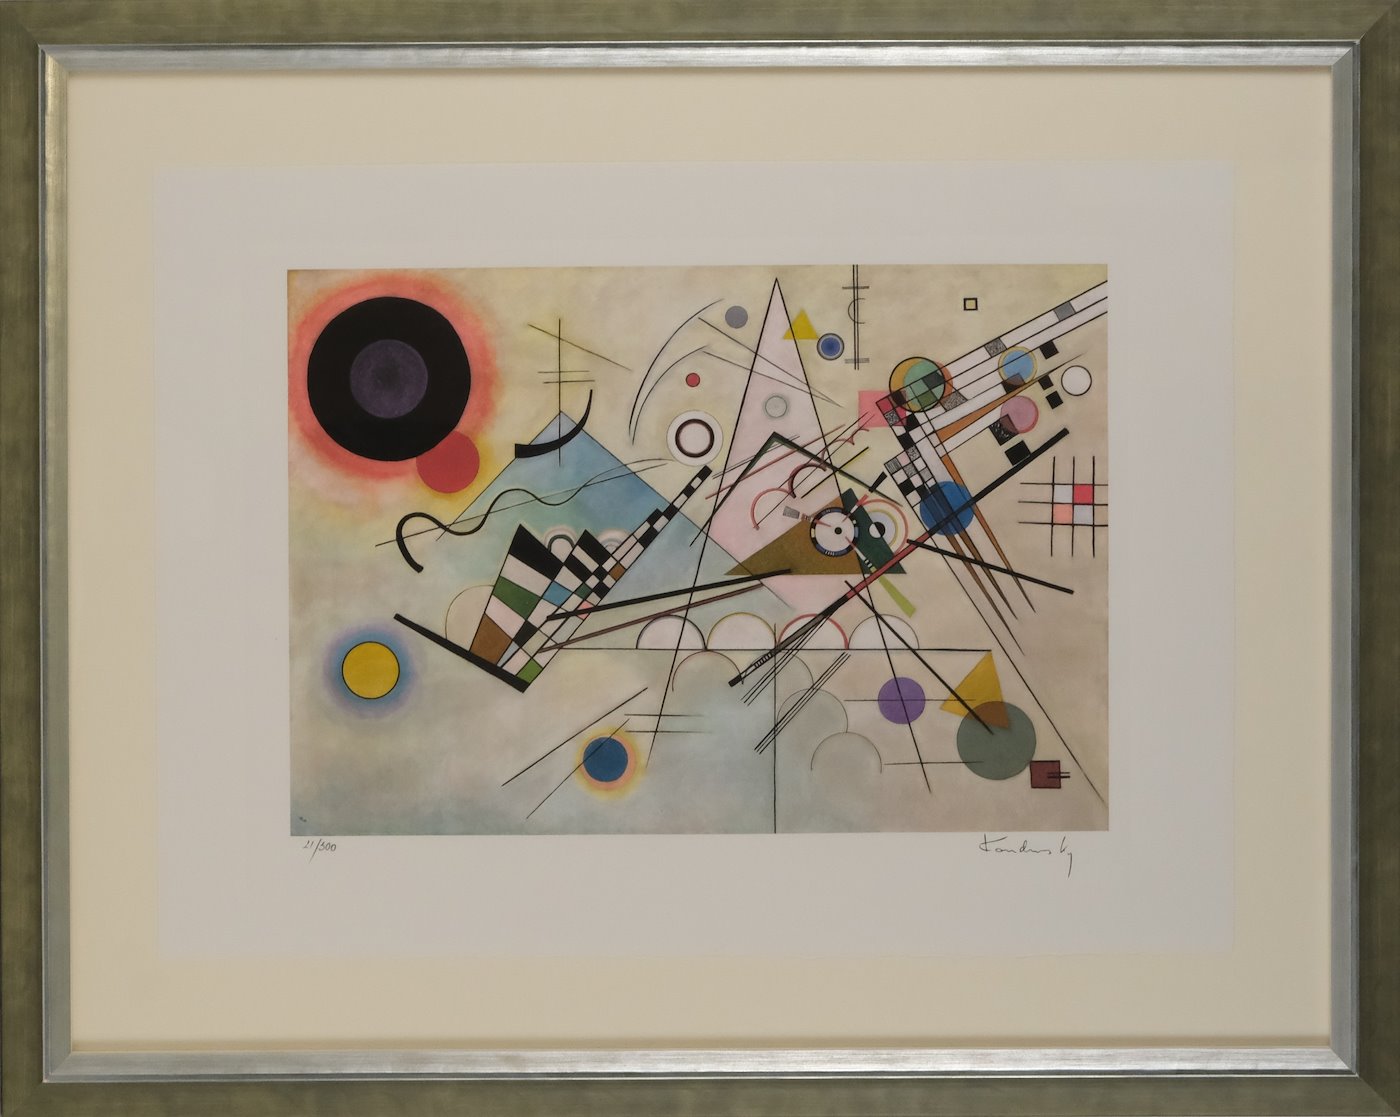 Vasilij Kandinsky - Composition VIII